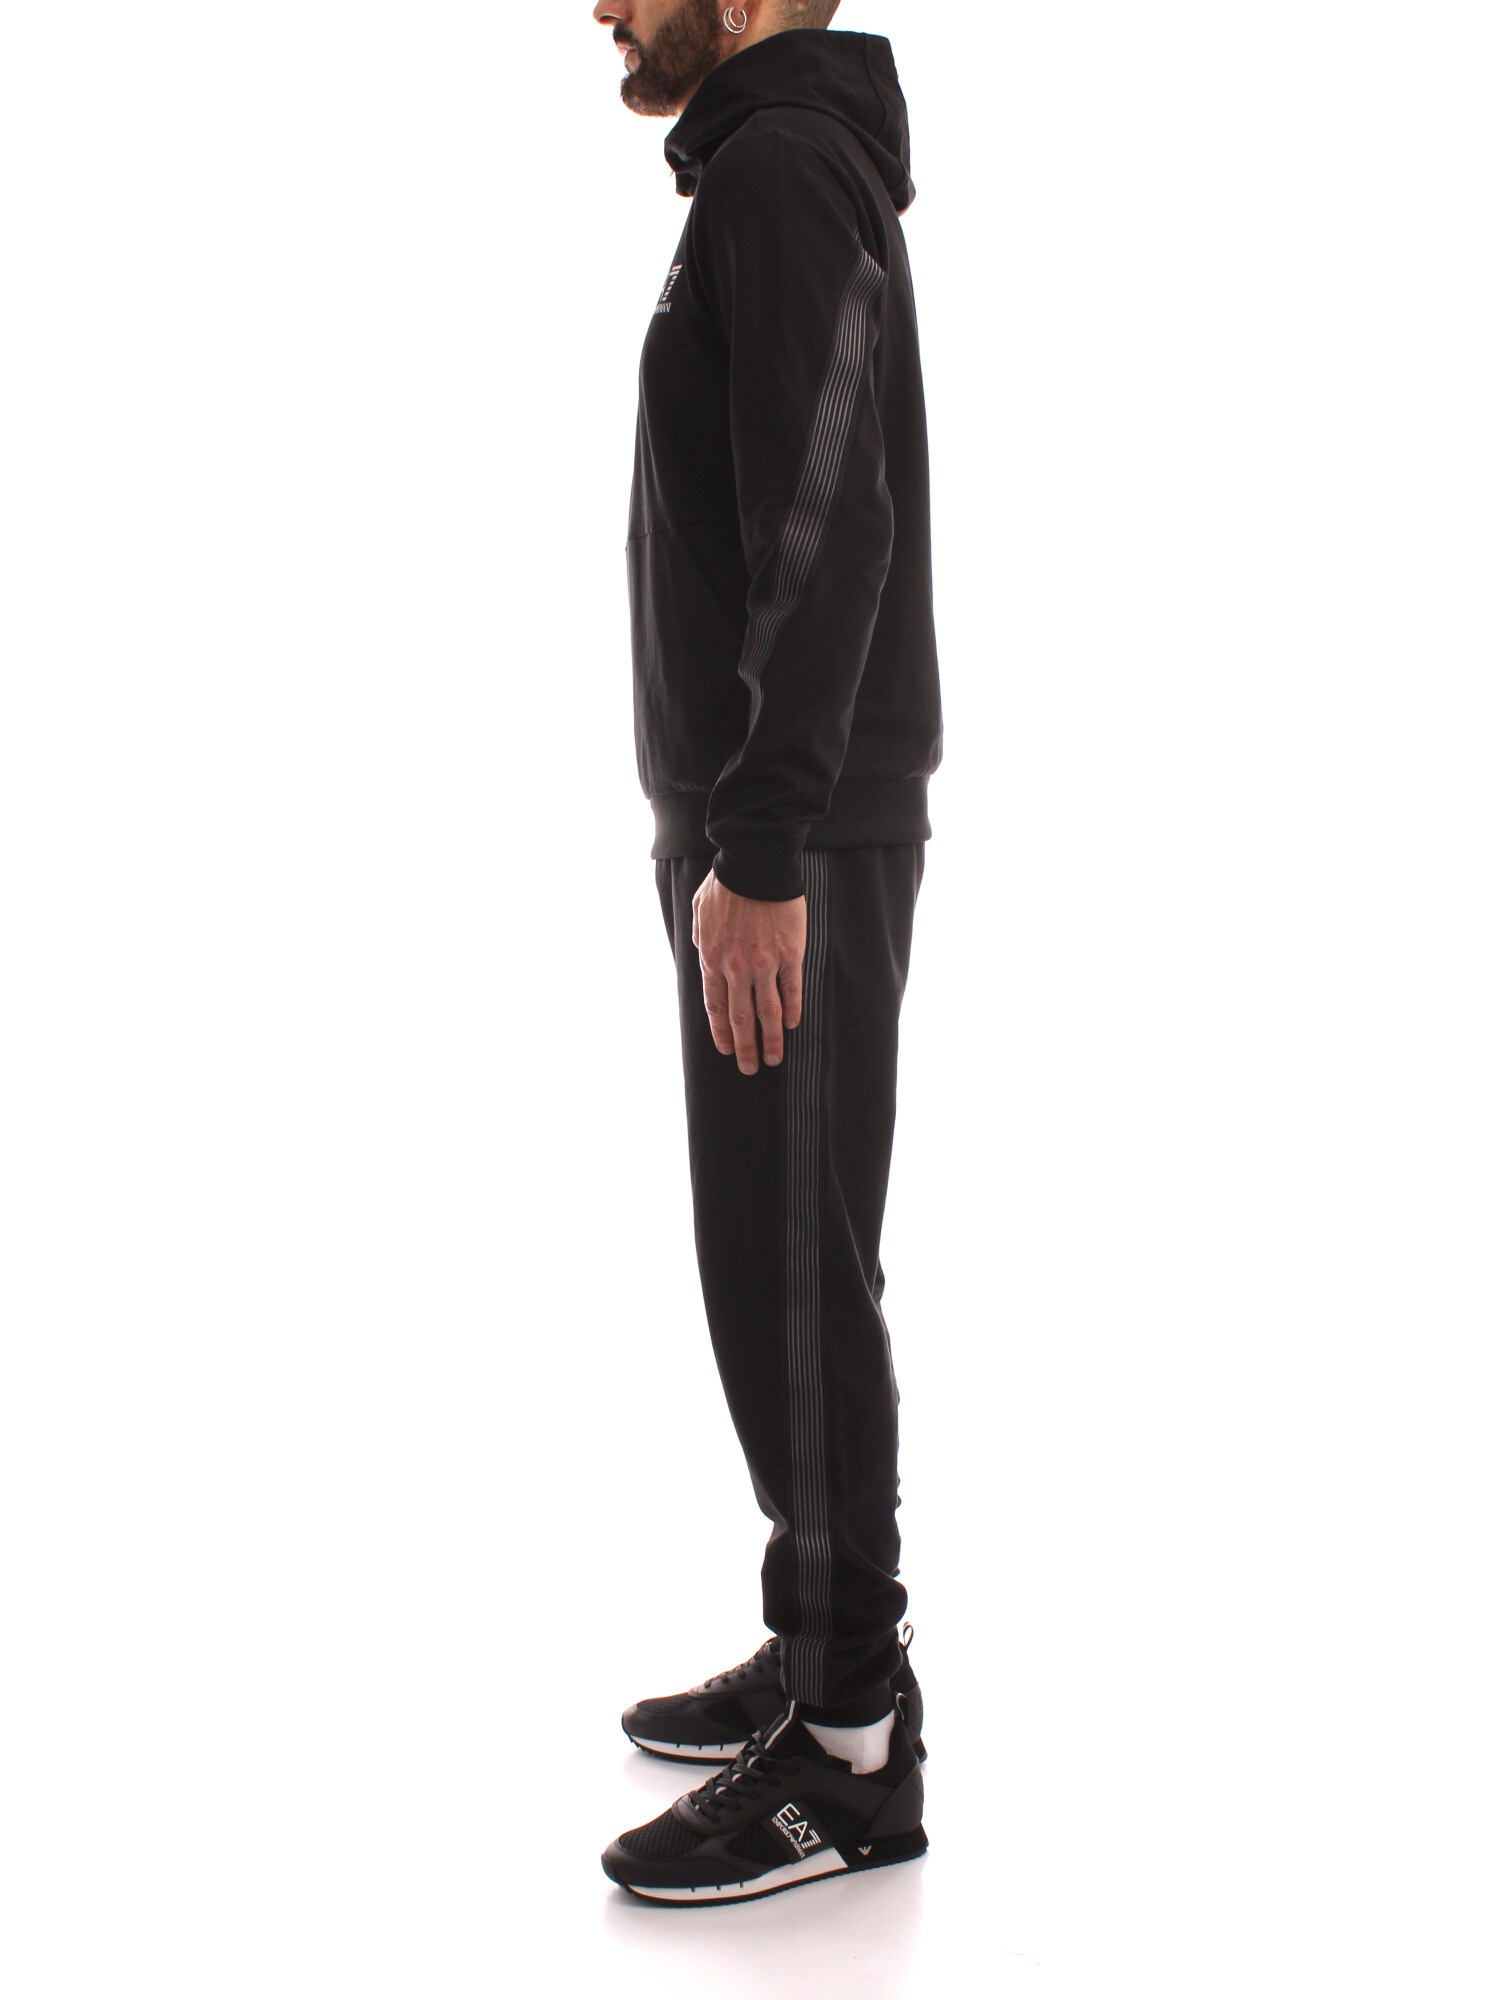 Ea7 3LPV56 BLACK Clothing Man